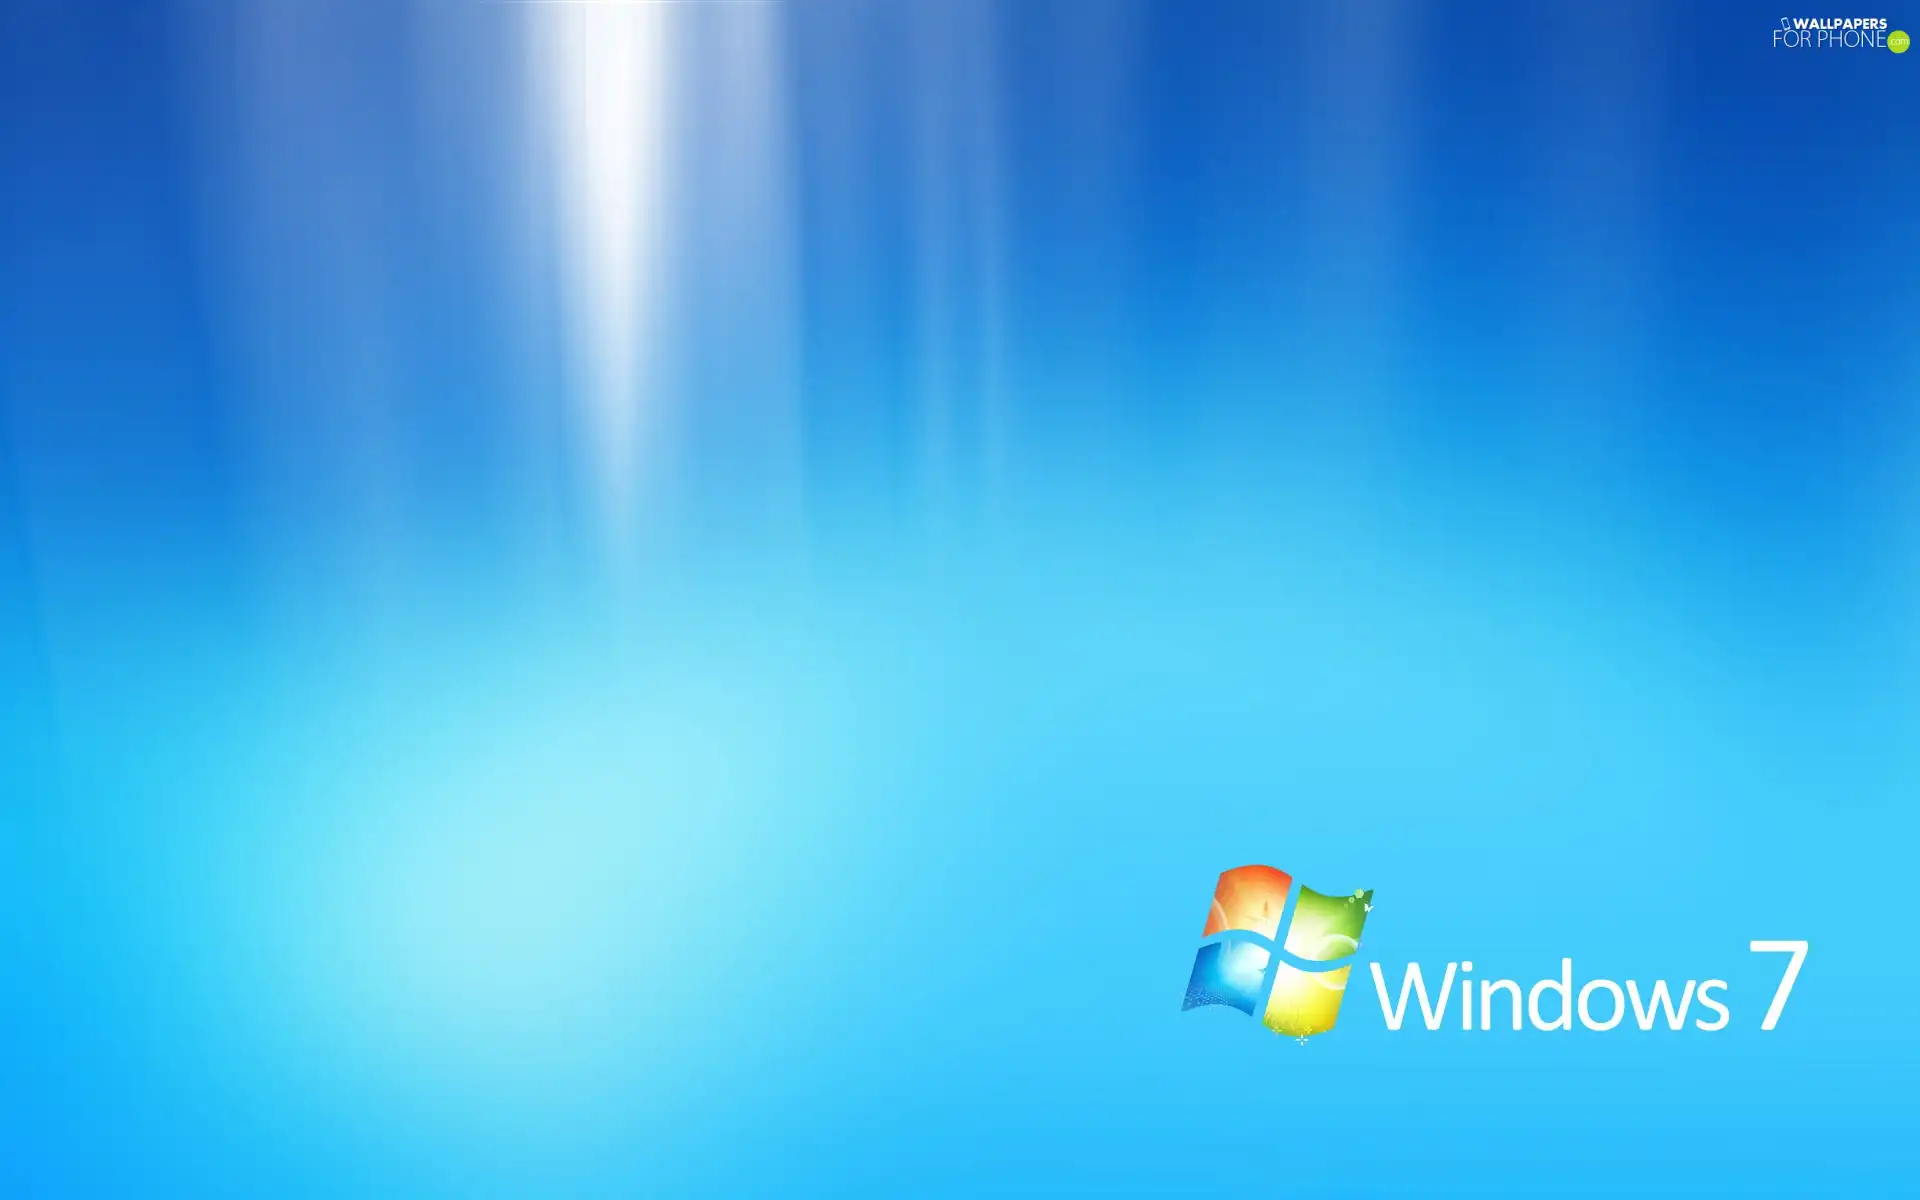 logo, Windows 7, The luminous, background, Blue